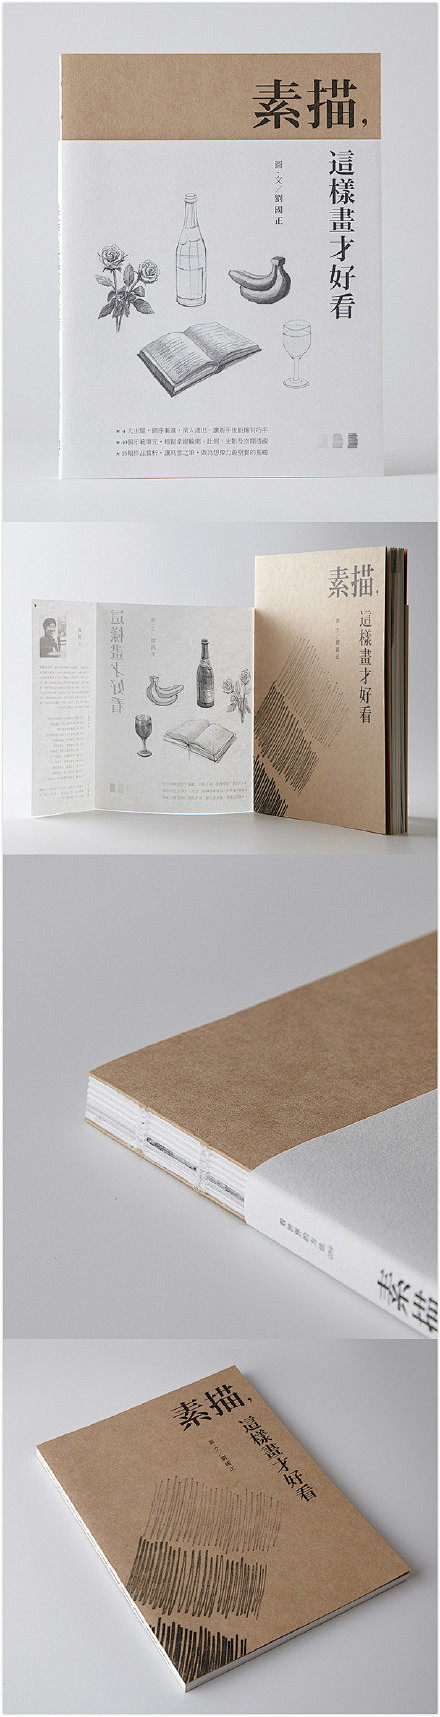 台湾设计师 yu-kai hung 书籍...